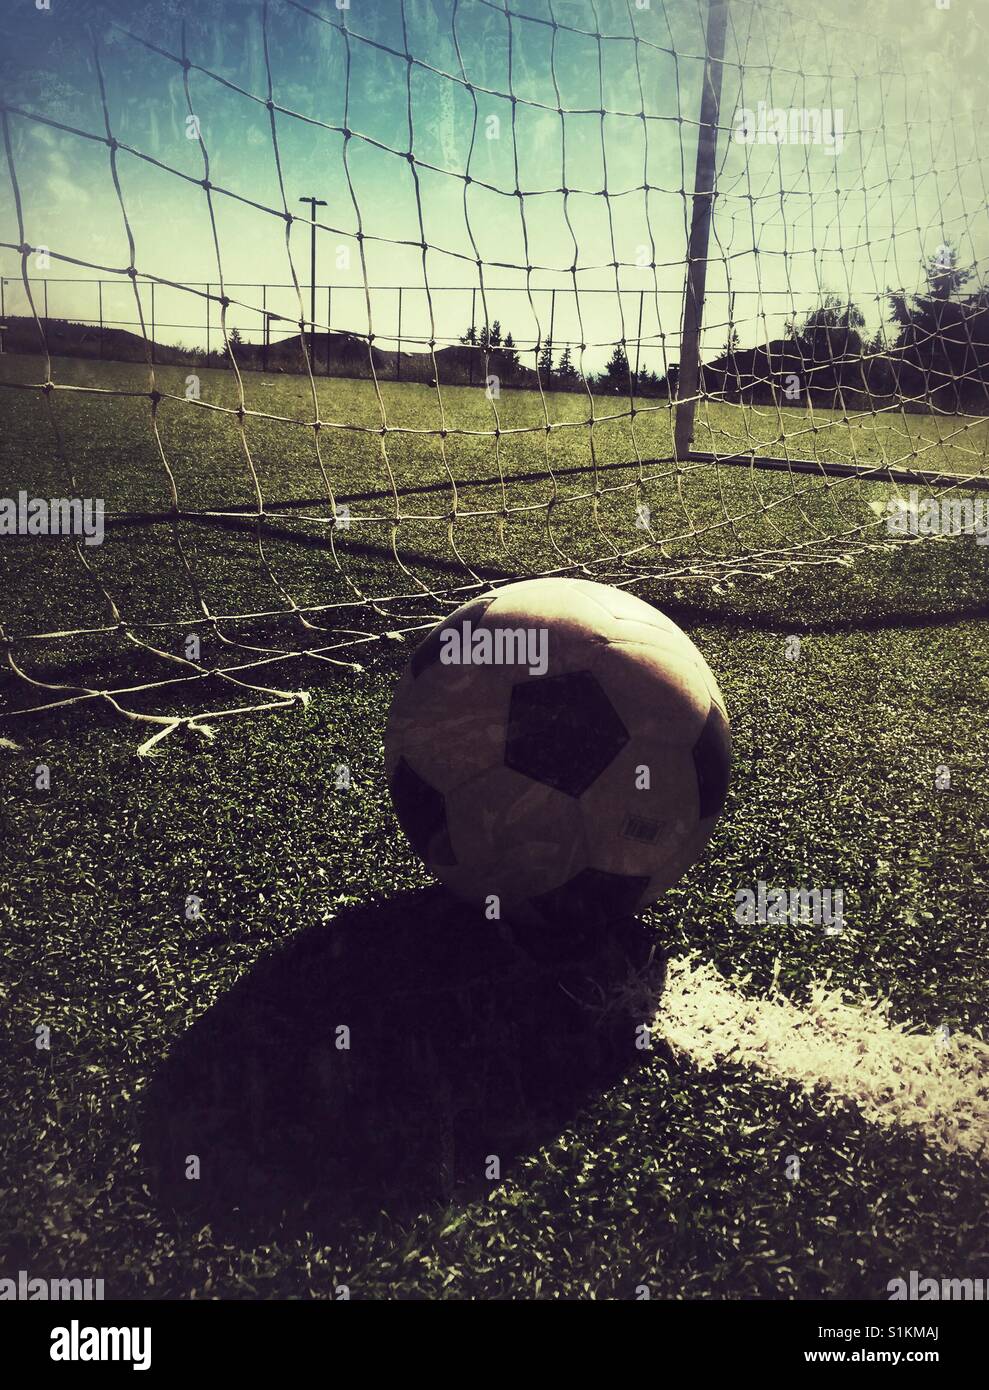 Un ballon de soccer jette grande ombre sur le terrain Banque D'Images